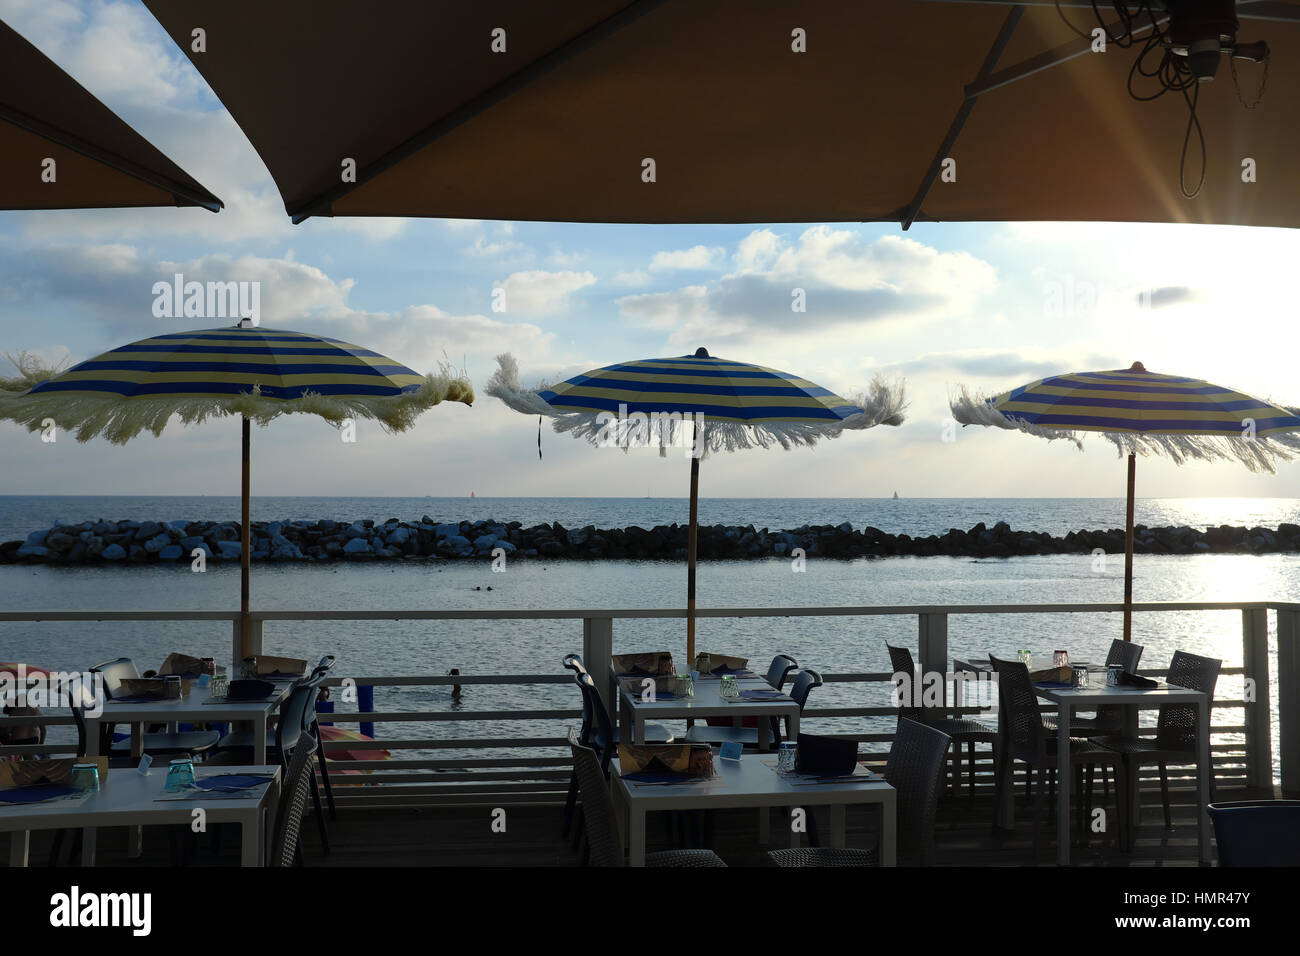 Bar sur la plage au coucher du soleil - restaurant en bord de mer avec vue sur mer à l'heure d'or juste avant le coucher du soleil - Tables et parasols de plage - Marina di Pisa, Italie Banque D'Images